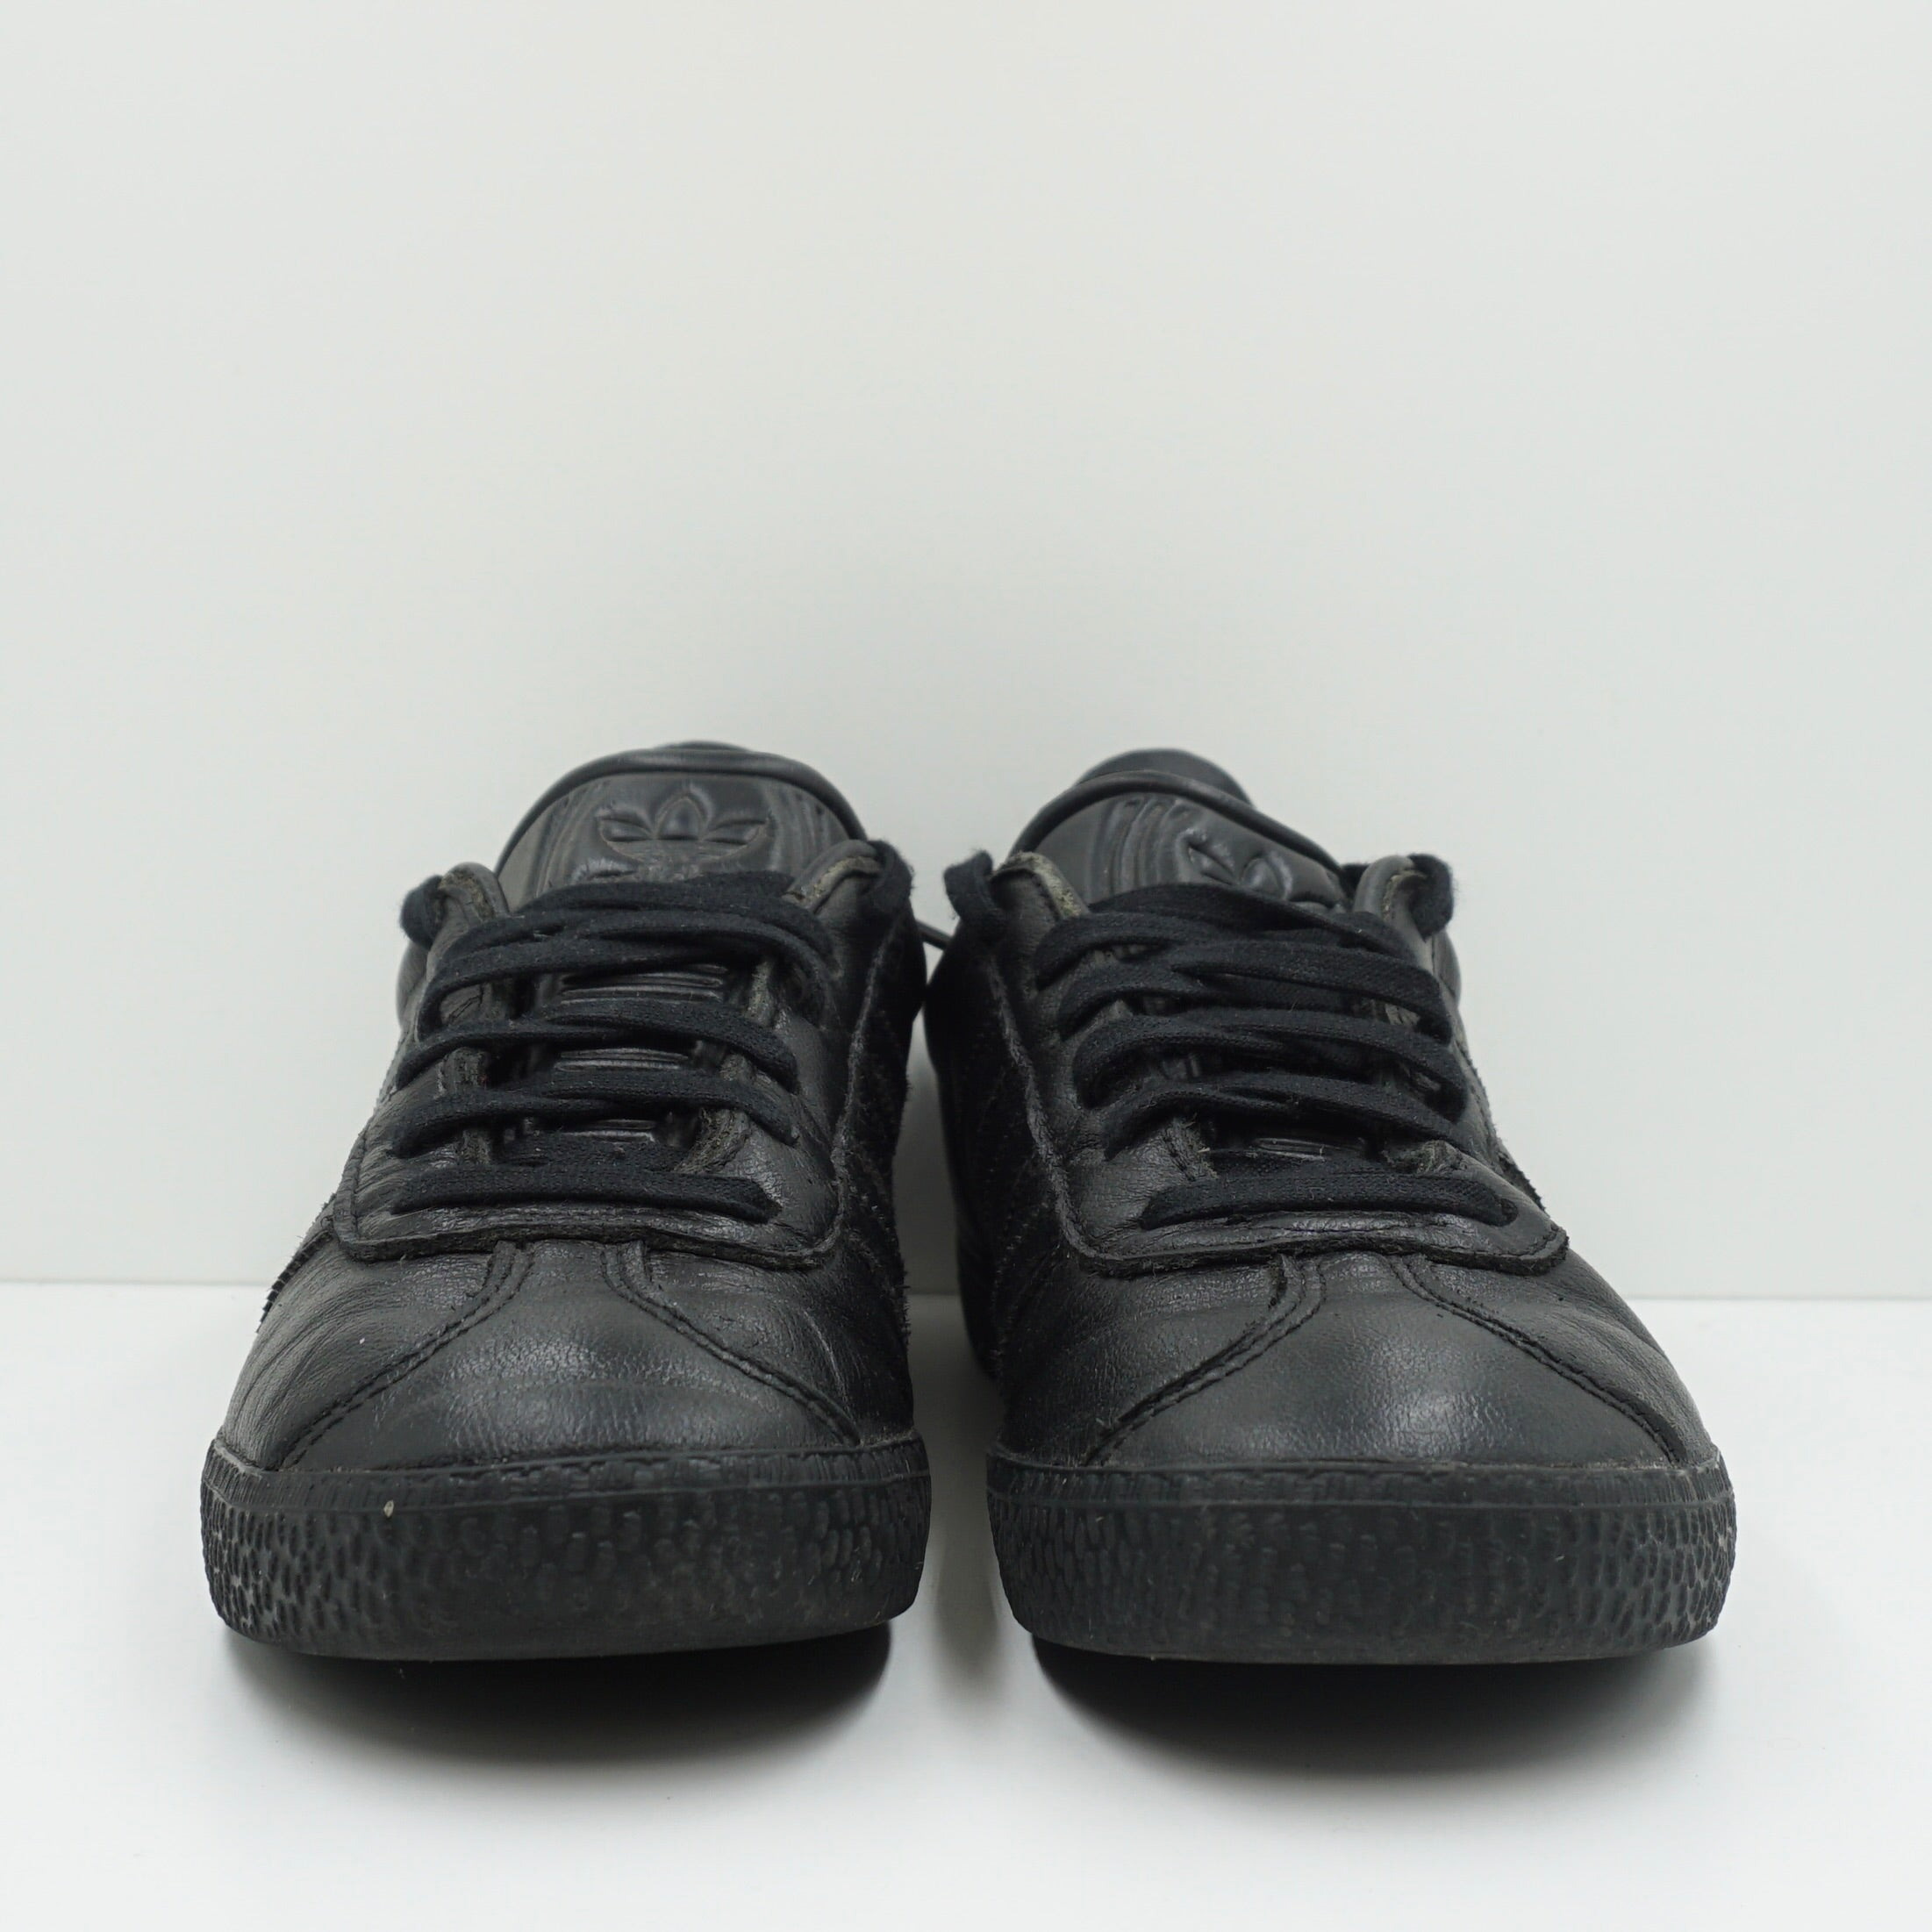 Adidas Gazelle Black Leather